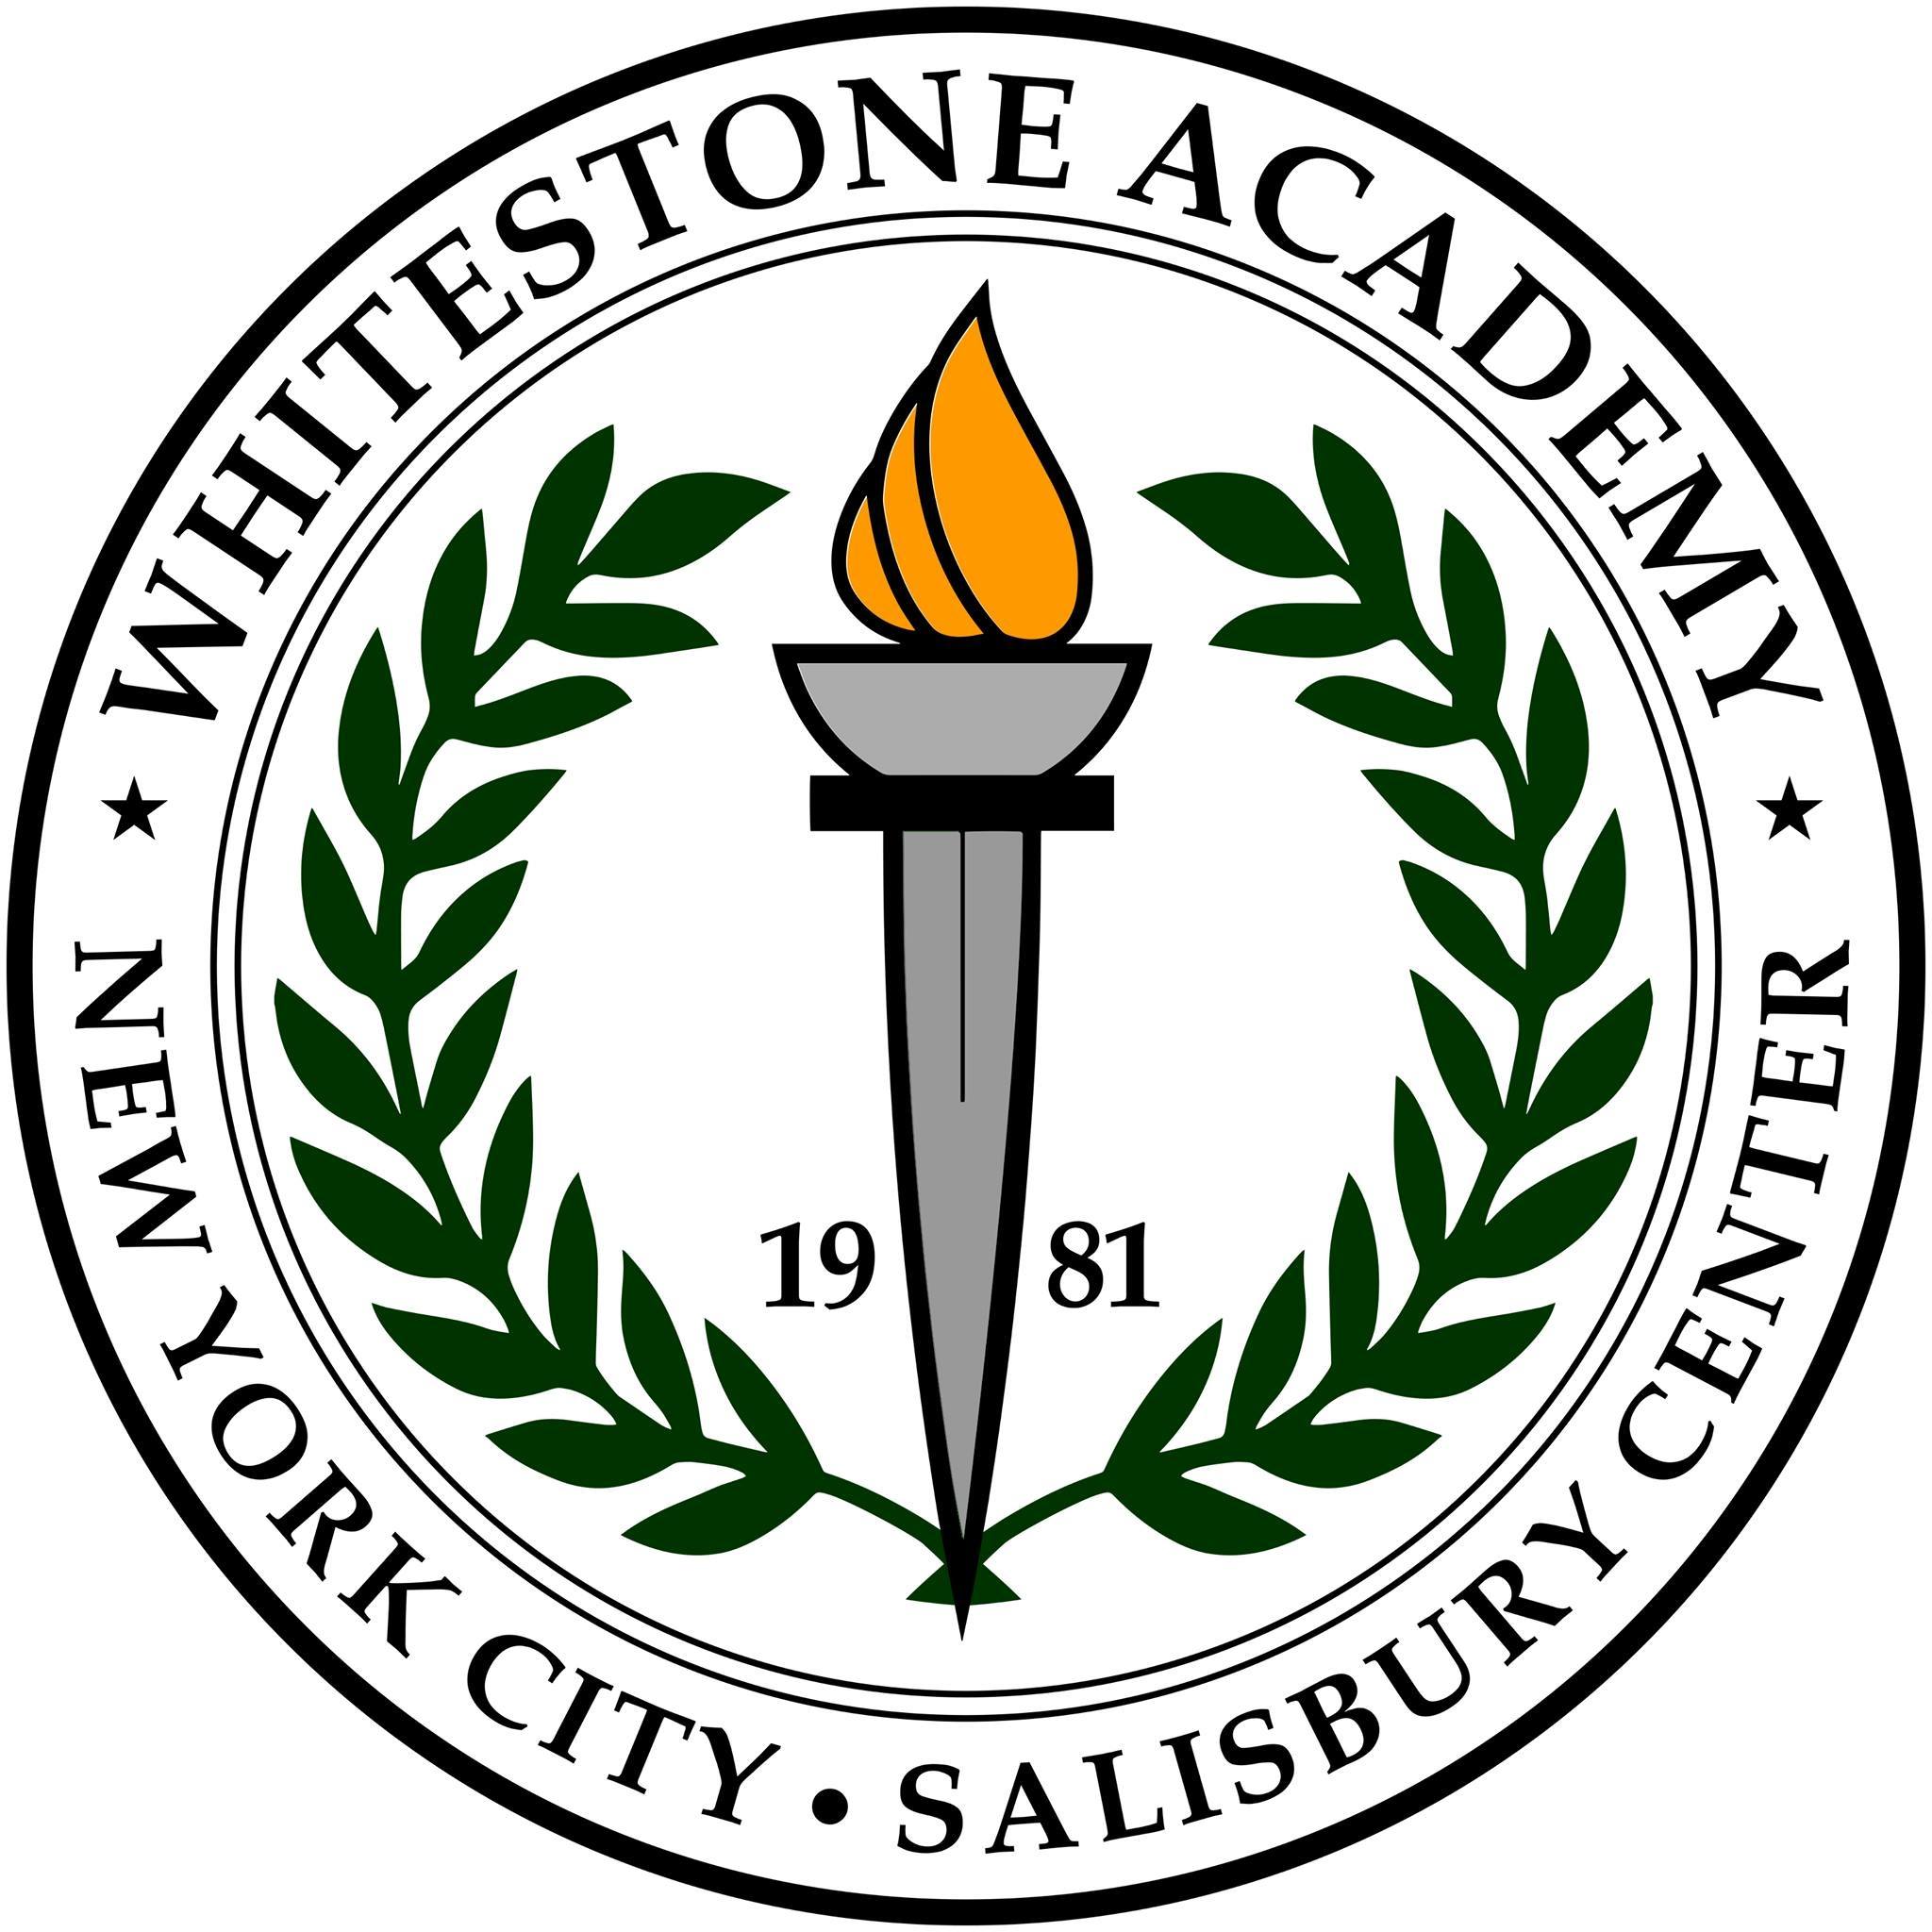 Whitestone Academy Logo